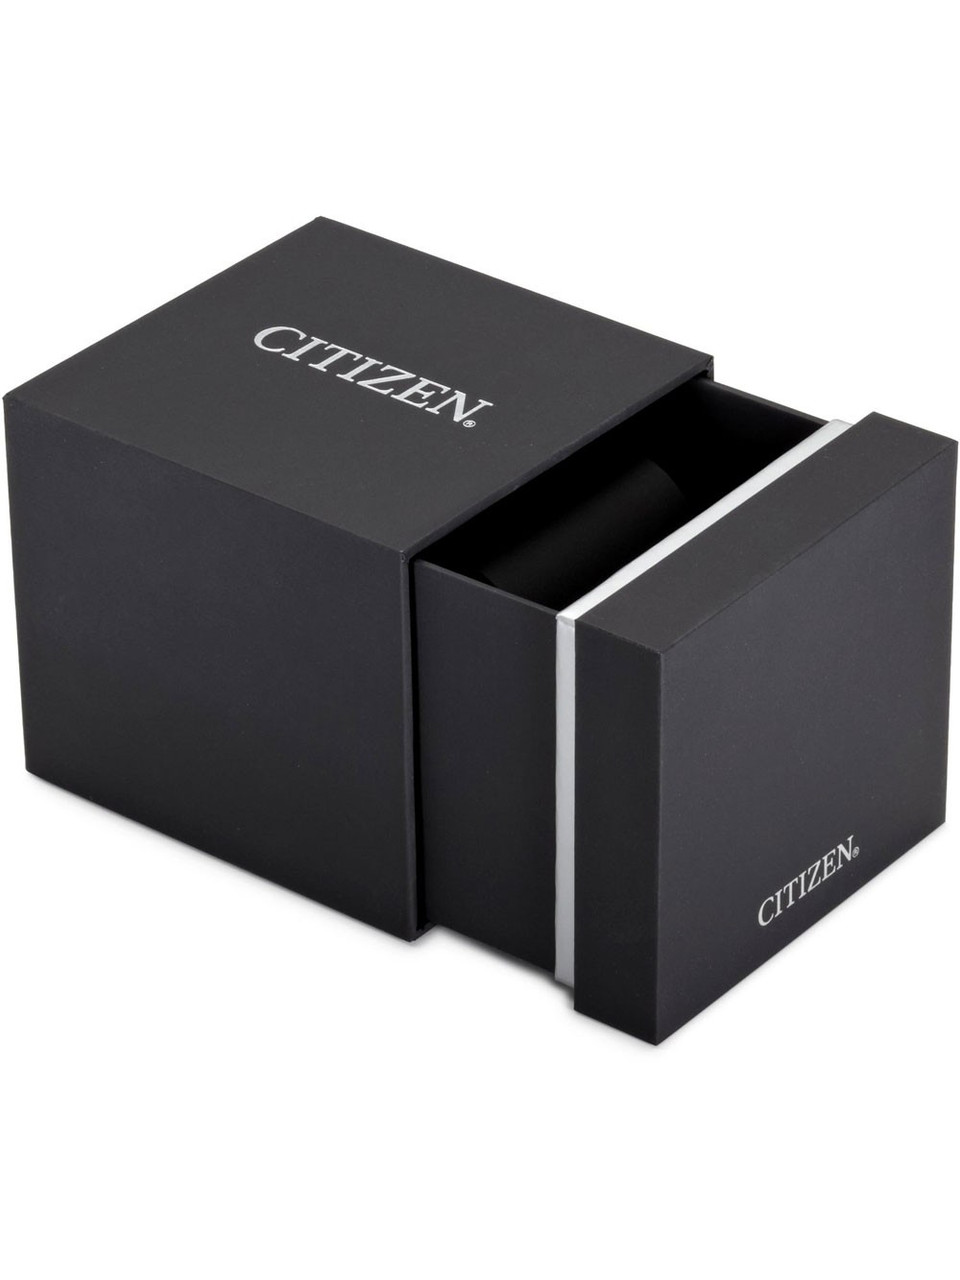 Citizen CA4471-80L Eco-Drive Genuine 10ATM 44 chrono - Watches owlica 